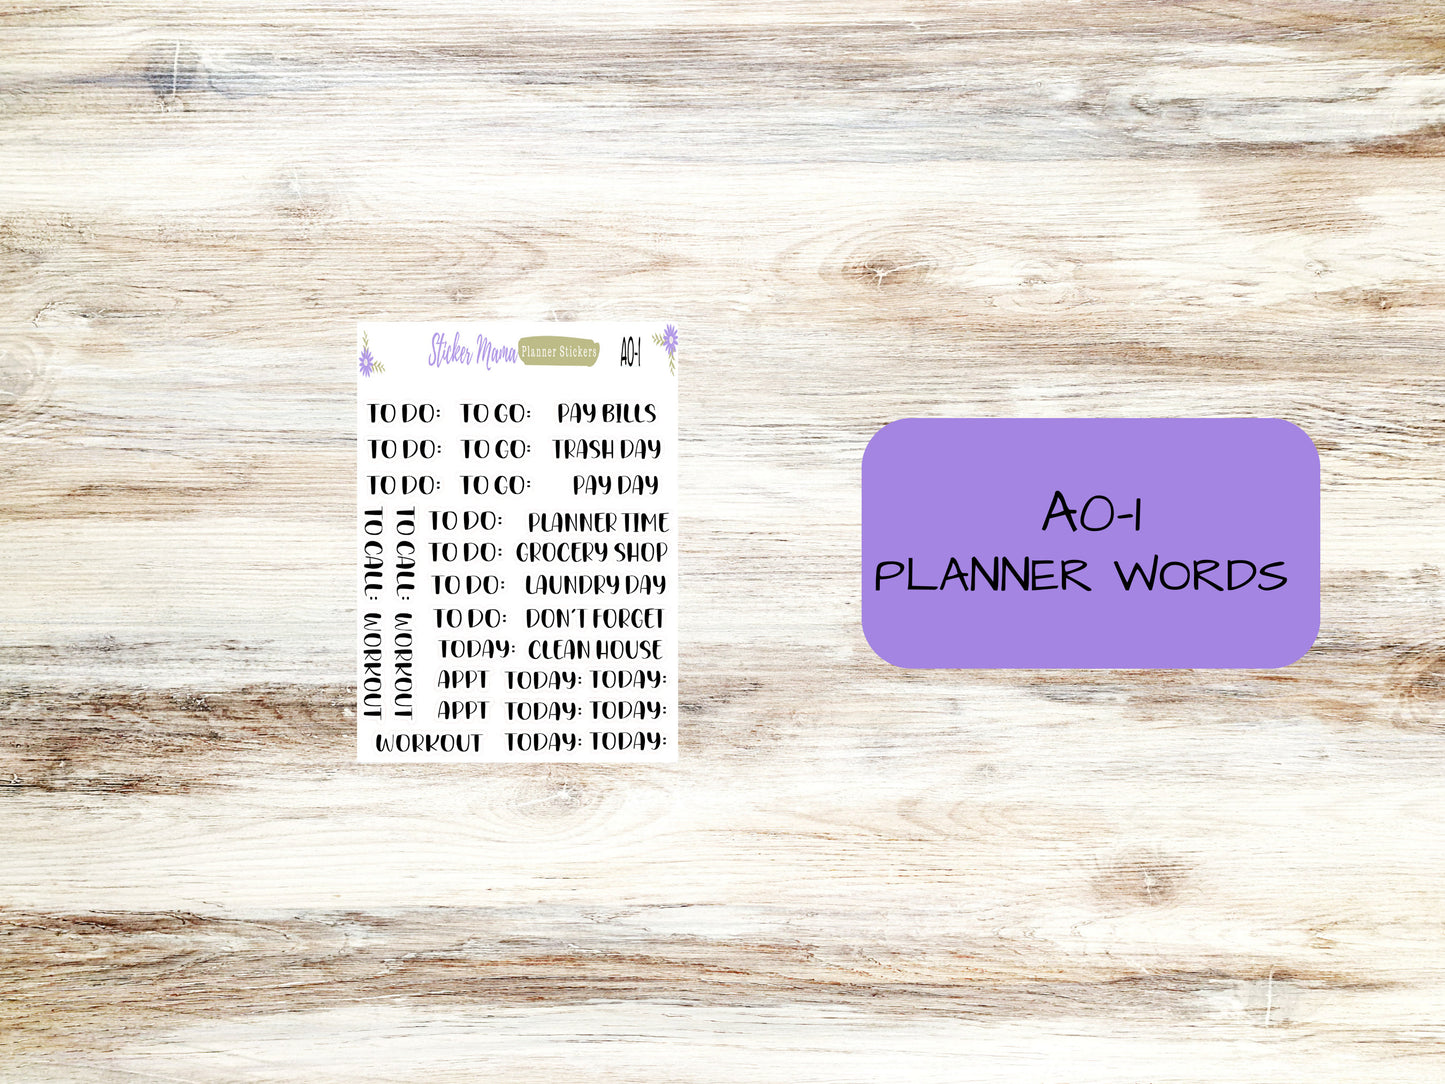 DAILY DUO 7x9-Kit #3102  || Jack - O - Lantern || Planner Stickers - Daily Duo 7x9 Planner - Daily Duo Stickers - Daily Planner